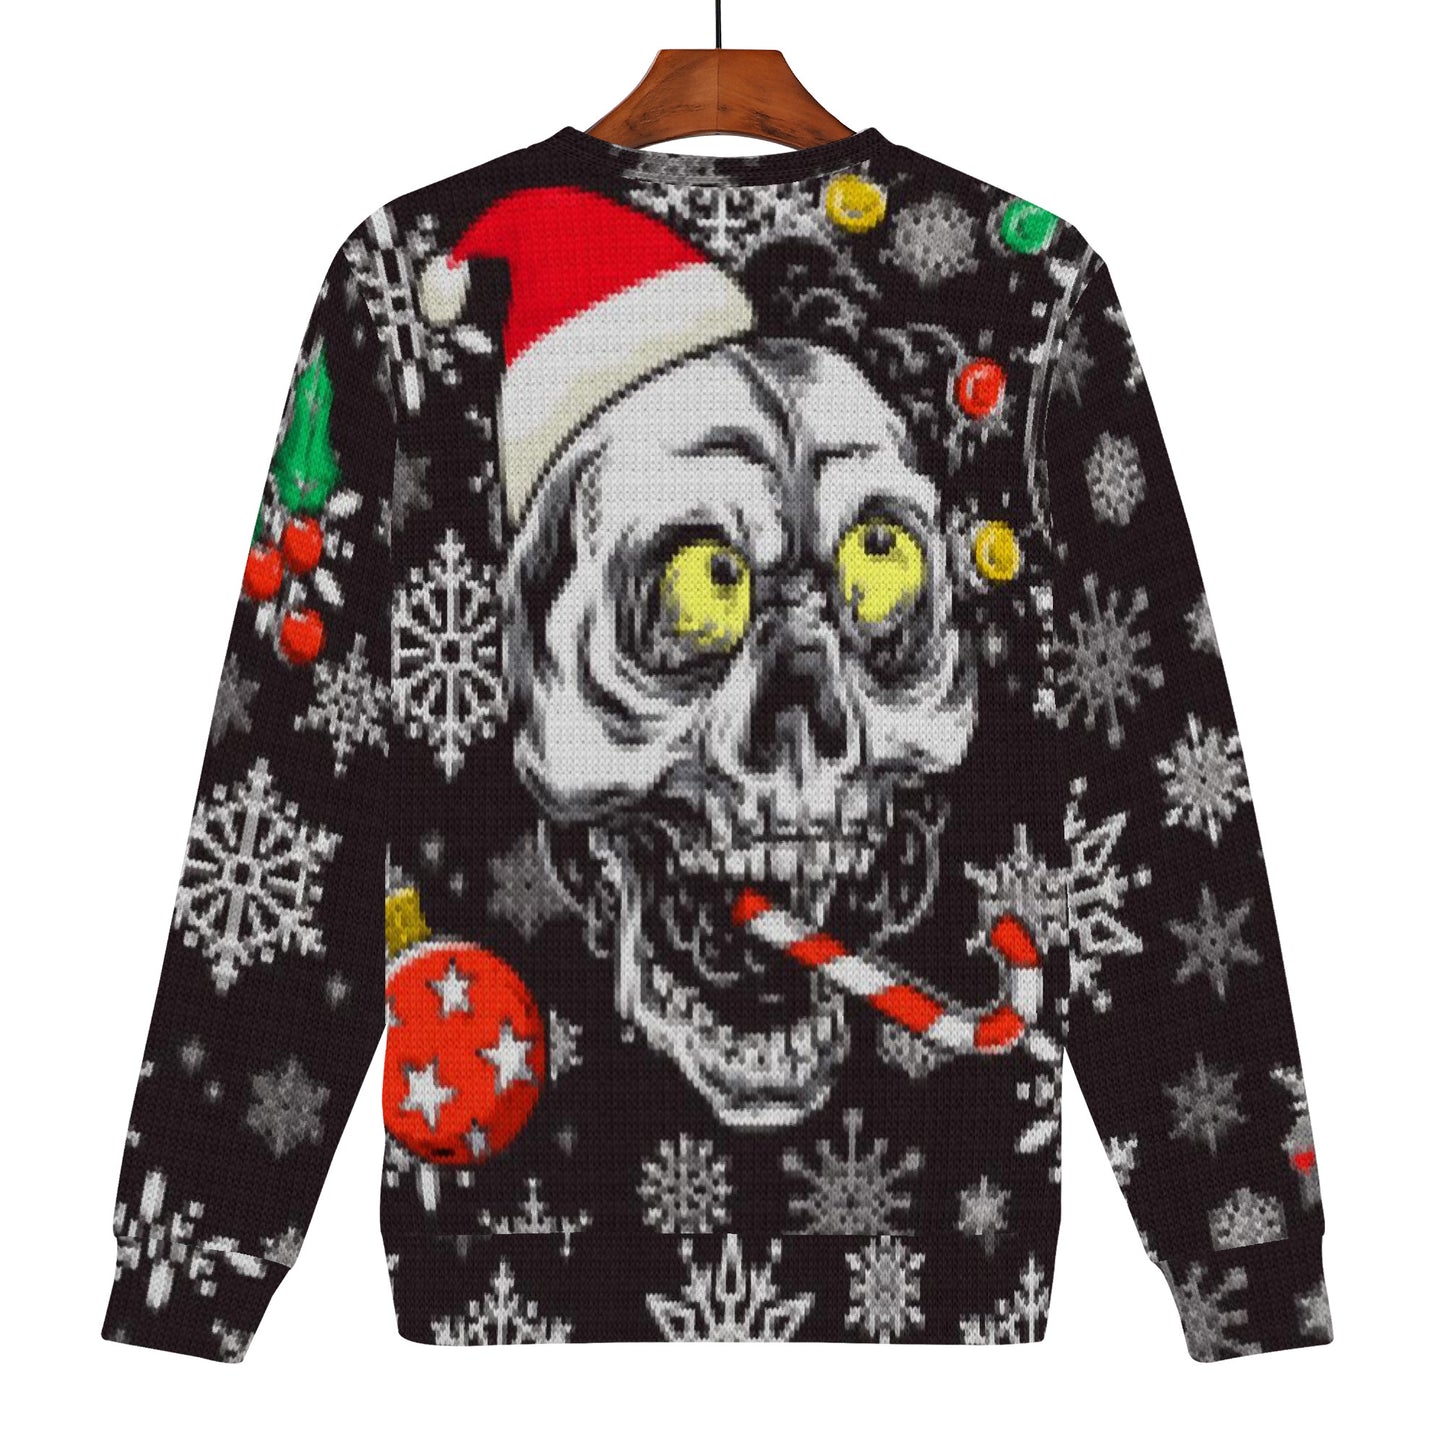 Merry Skulls Ugly Christmas Sweater style Sweatshirt